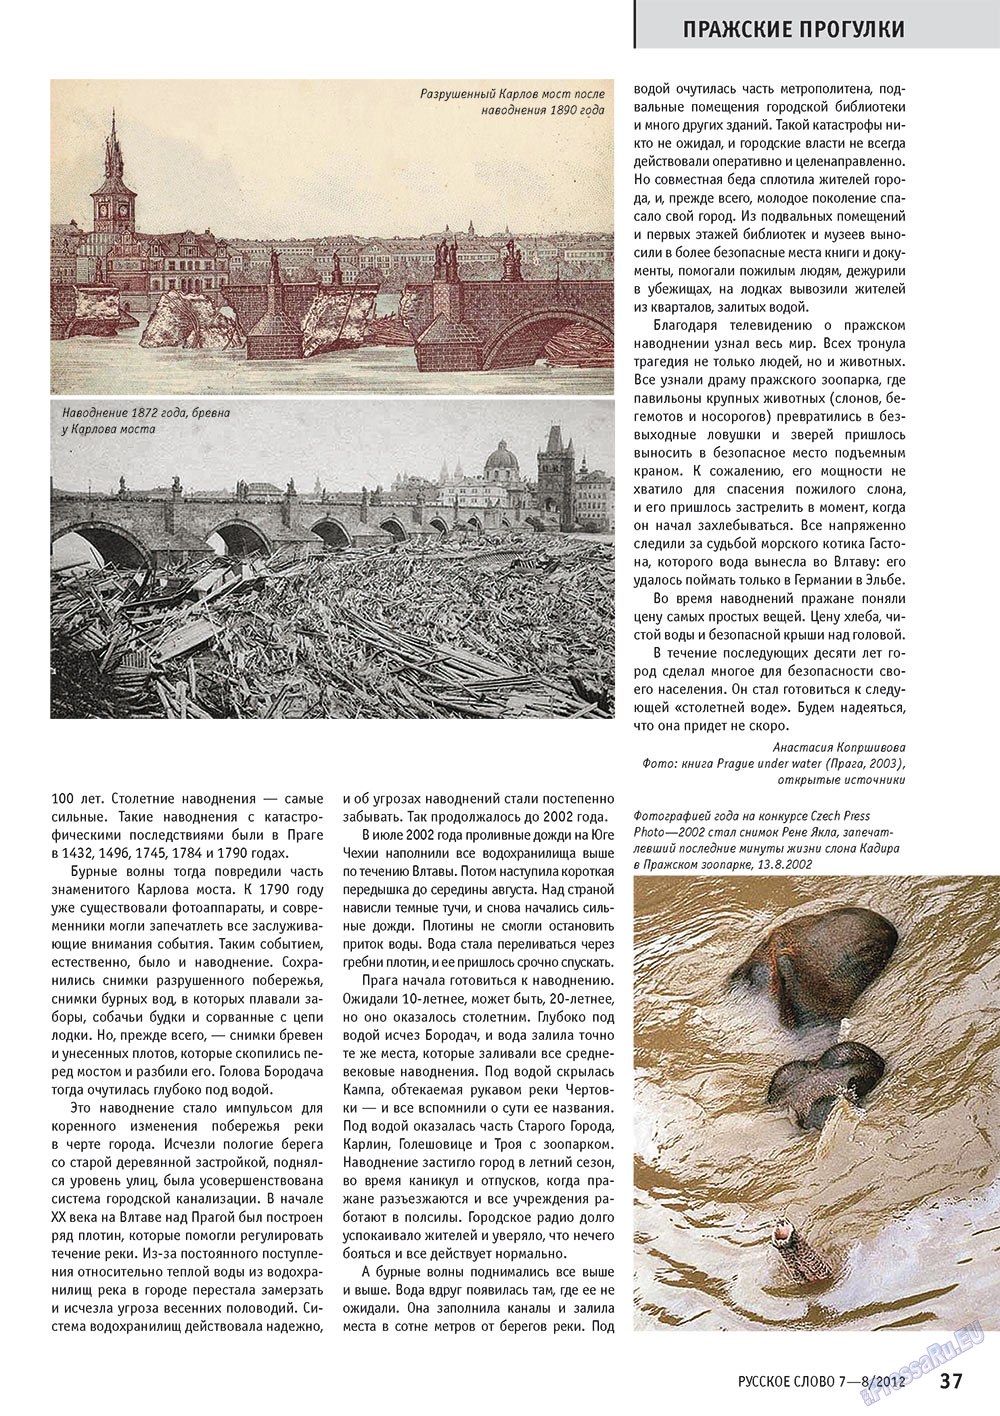 Русское слово (журнал). 2012 год, номер 7, стр. 37